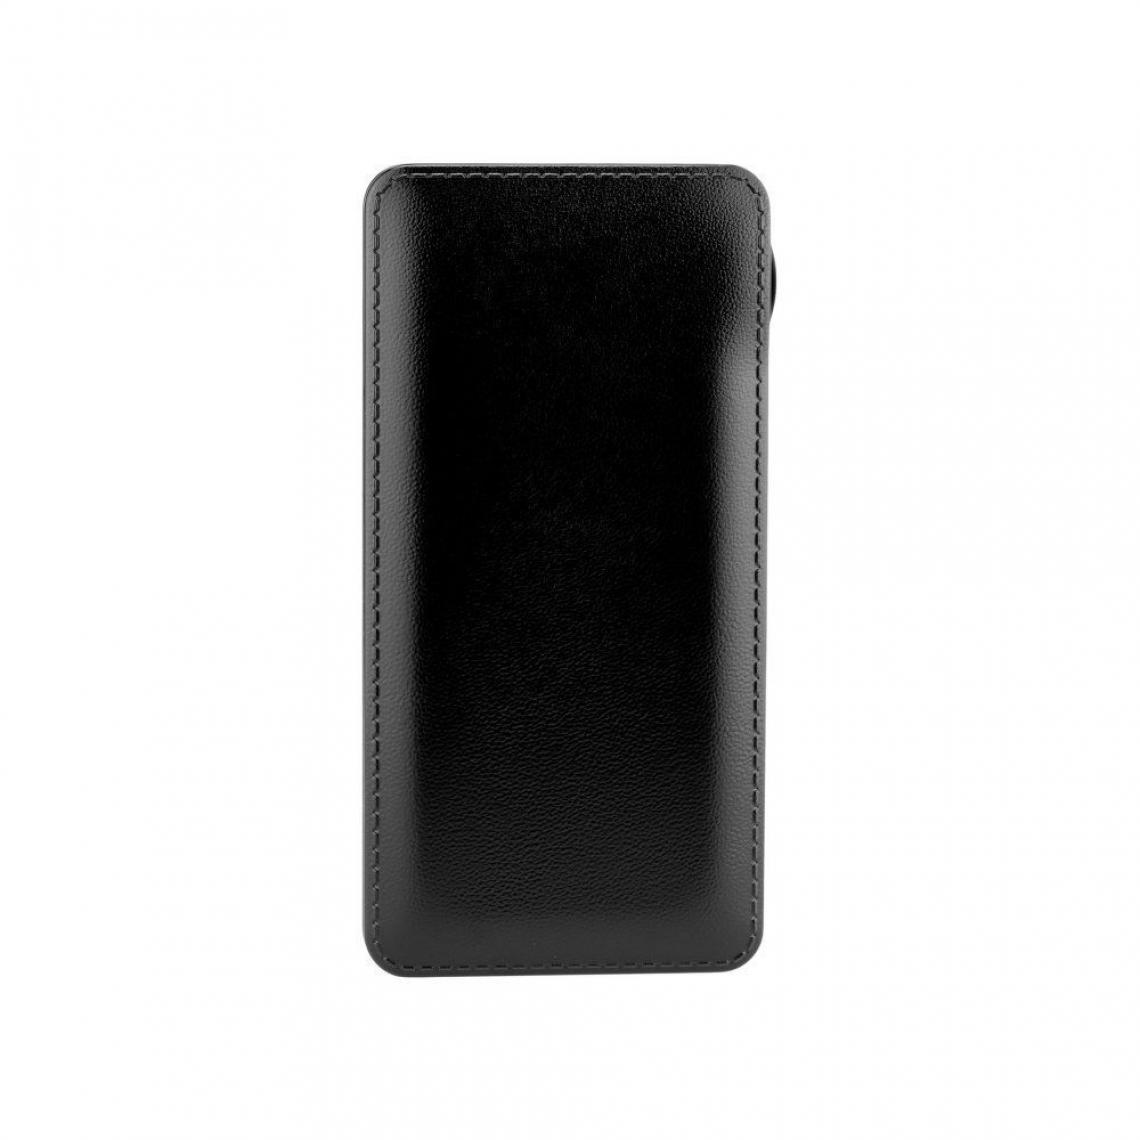 Ozzzo - Chargeur batterie externe 30000 mAh powerbank ozzzo noir pour Samsung Galaxy A6s - Autres accessoires smartphone